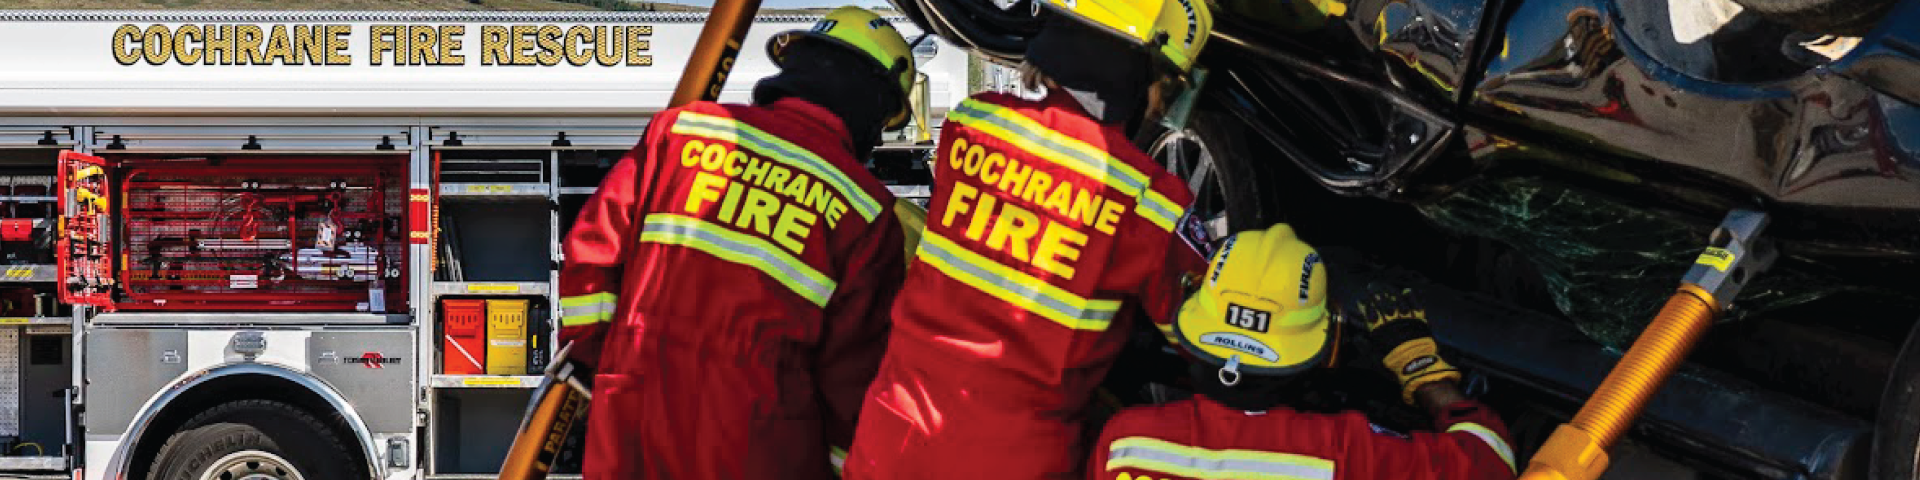 Cochrane Firefighters